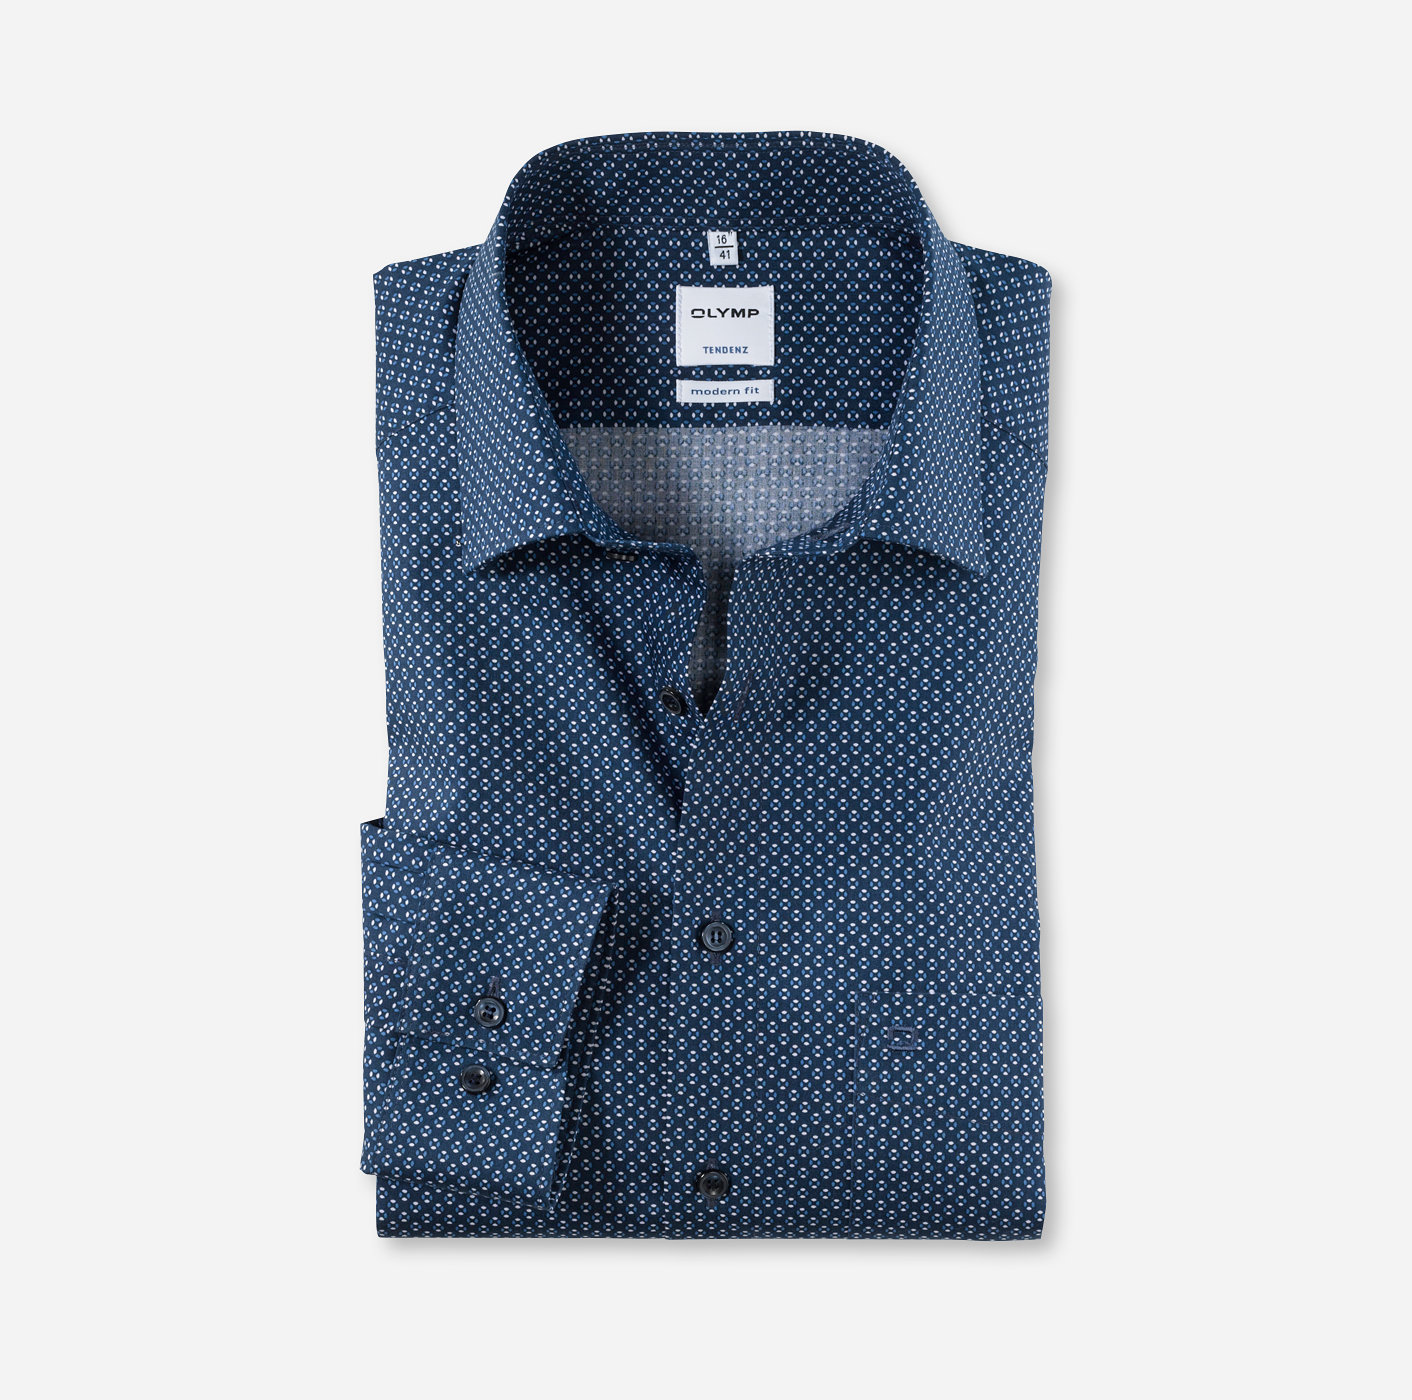 OLYMP Tendenz, modern fit, Business shirt, New Kent, Marine